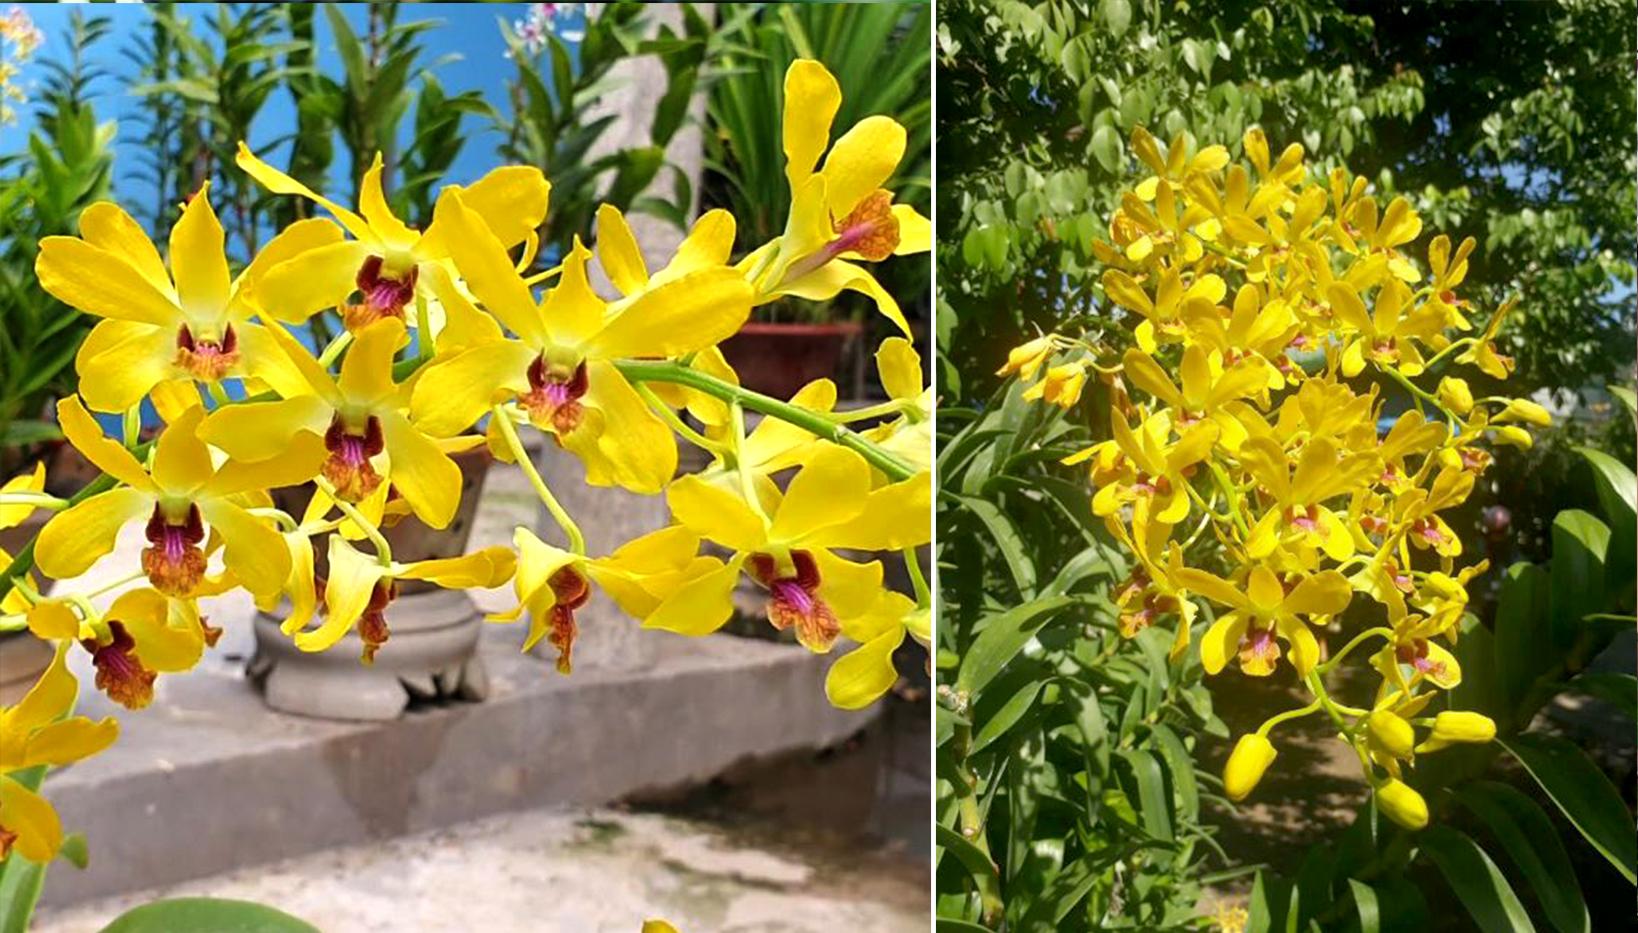 Lan dendro - Phân loại, cách trồng và chăm sóc cho hoa quanh năm - 18